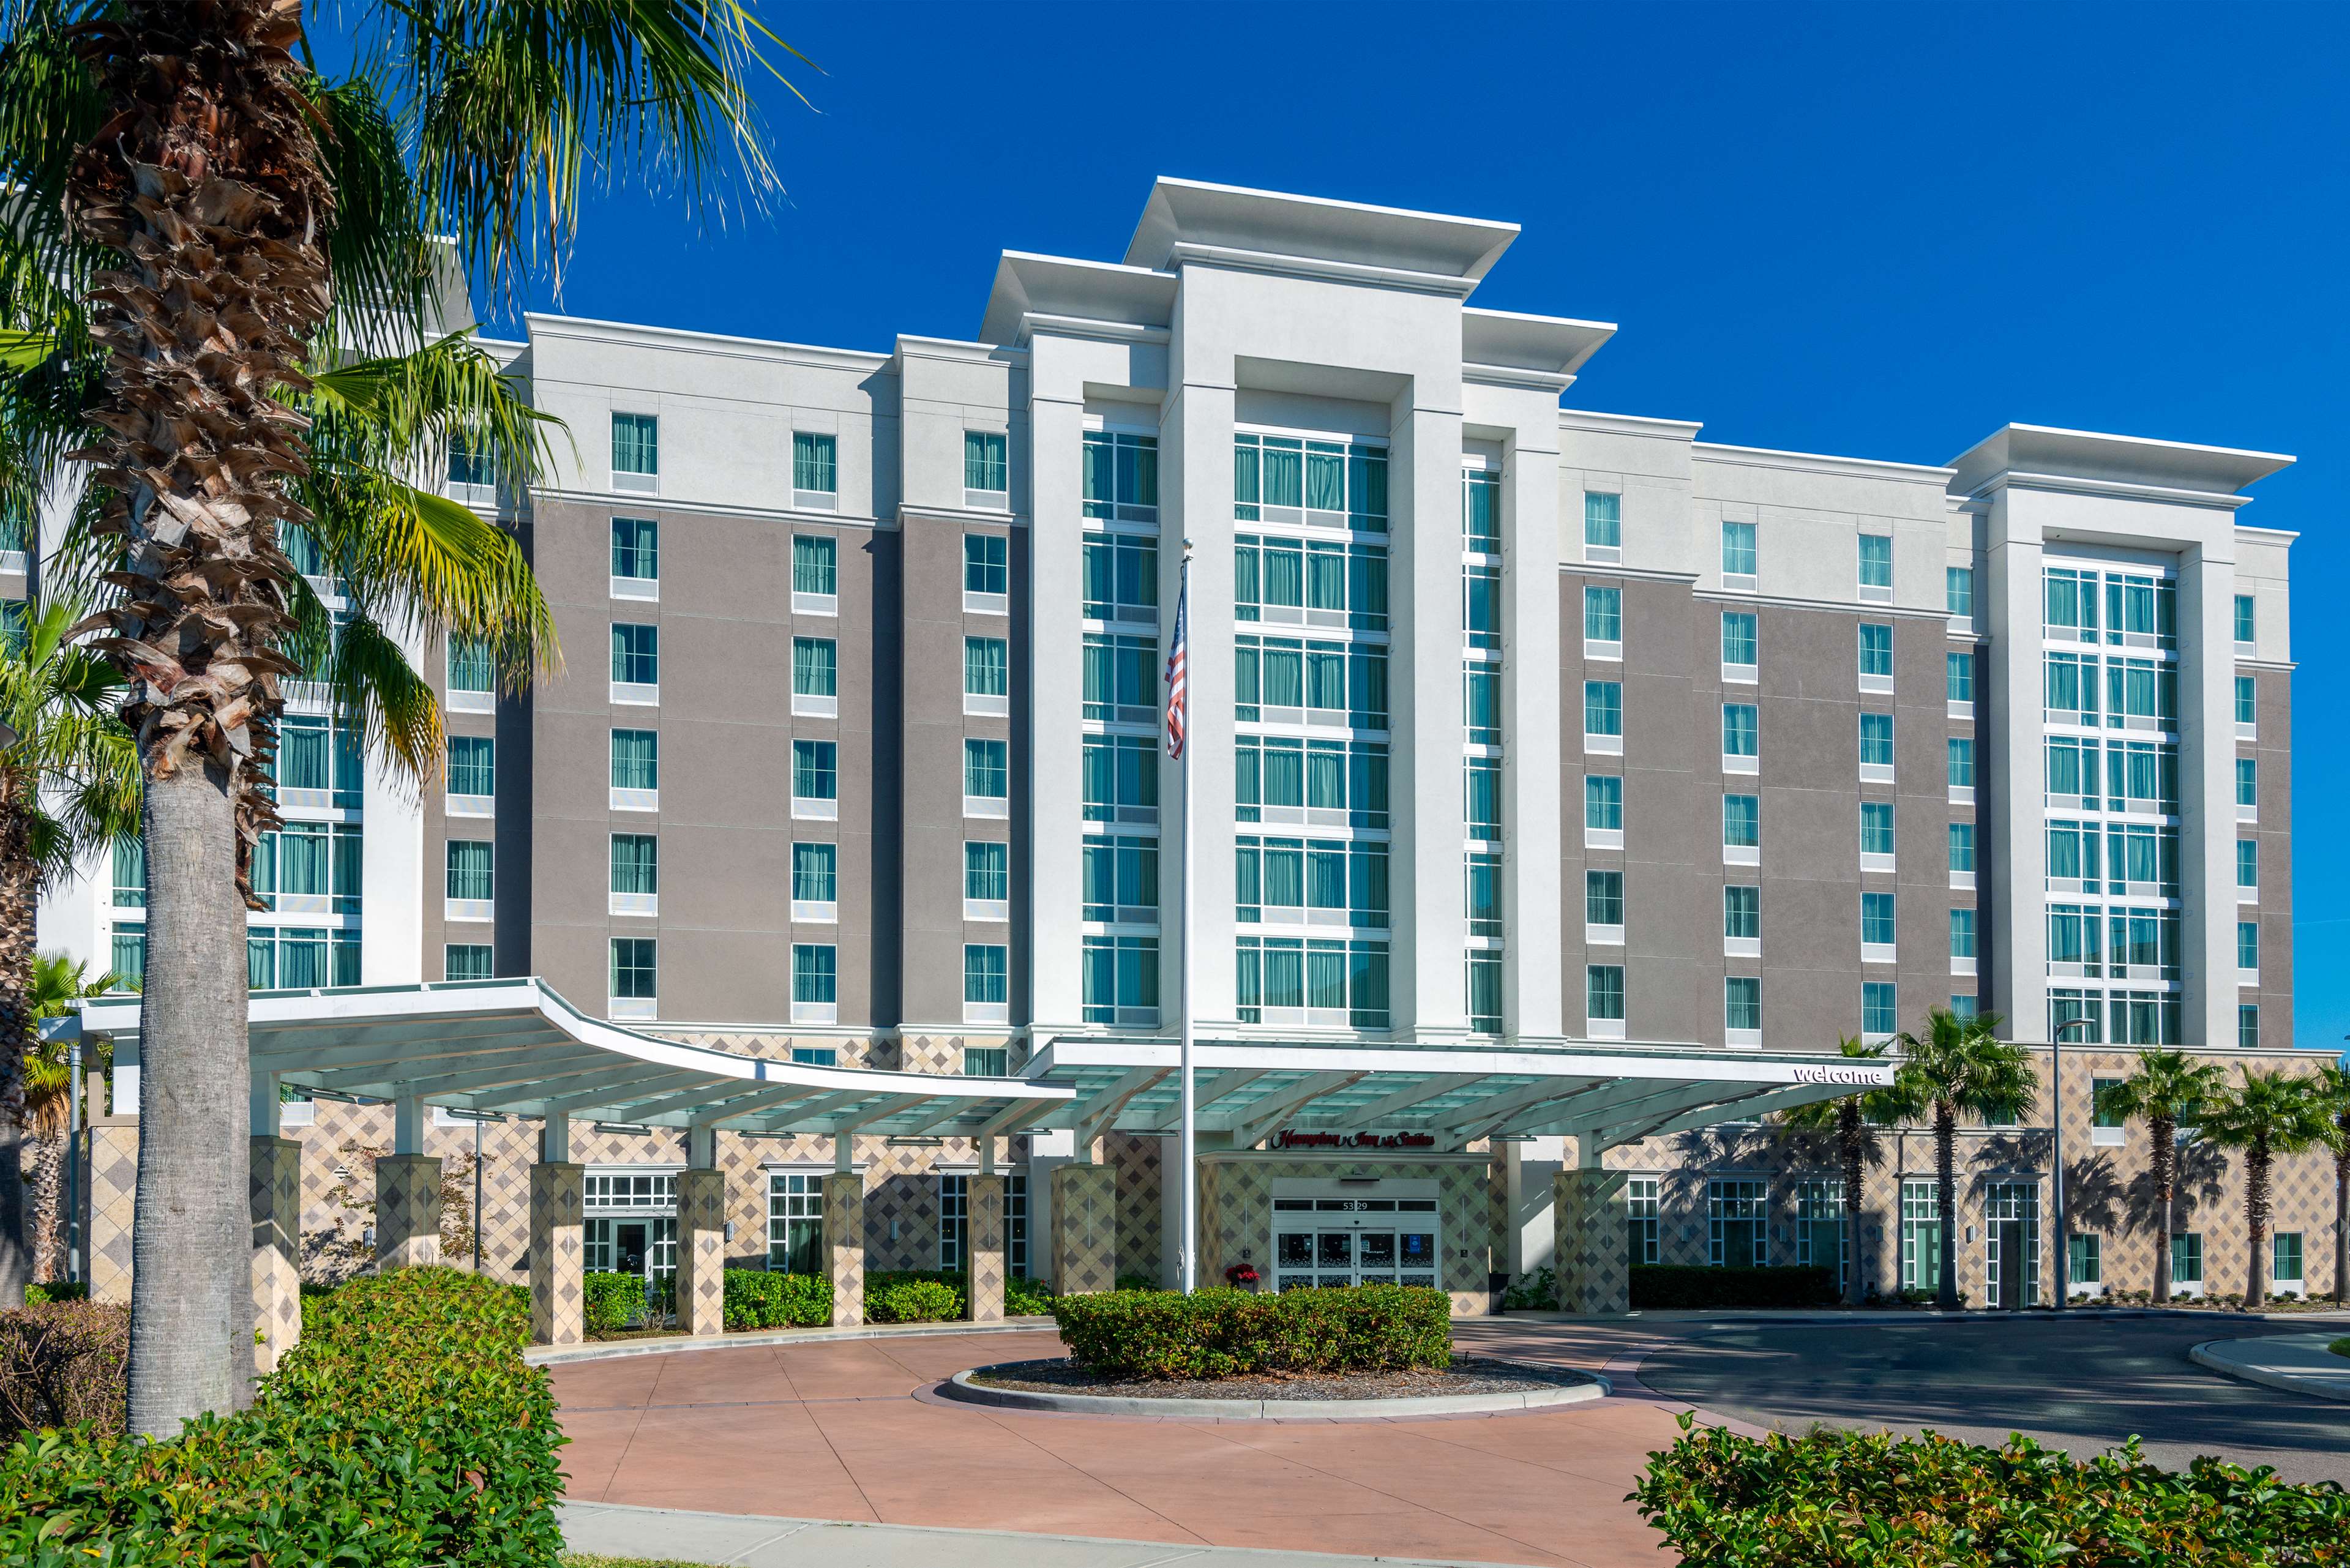 Hampton Inn And Suites Tampa Airport Avion Park Westshore 5329 Avion Park Dr Tampa Fl 33607